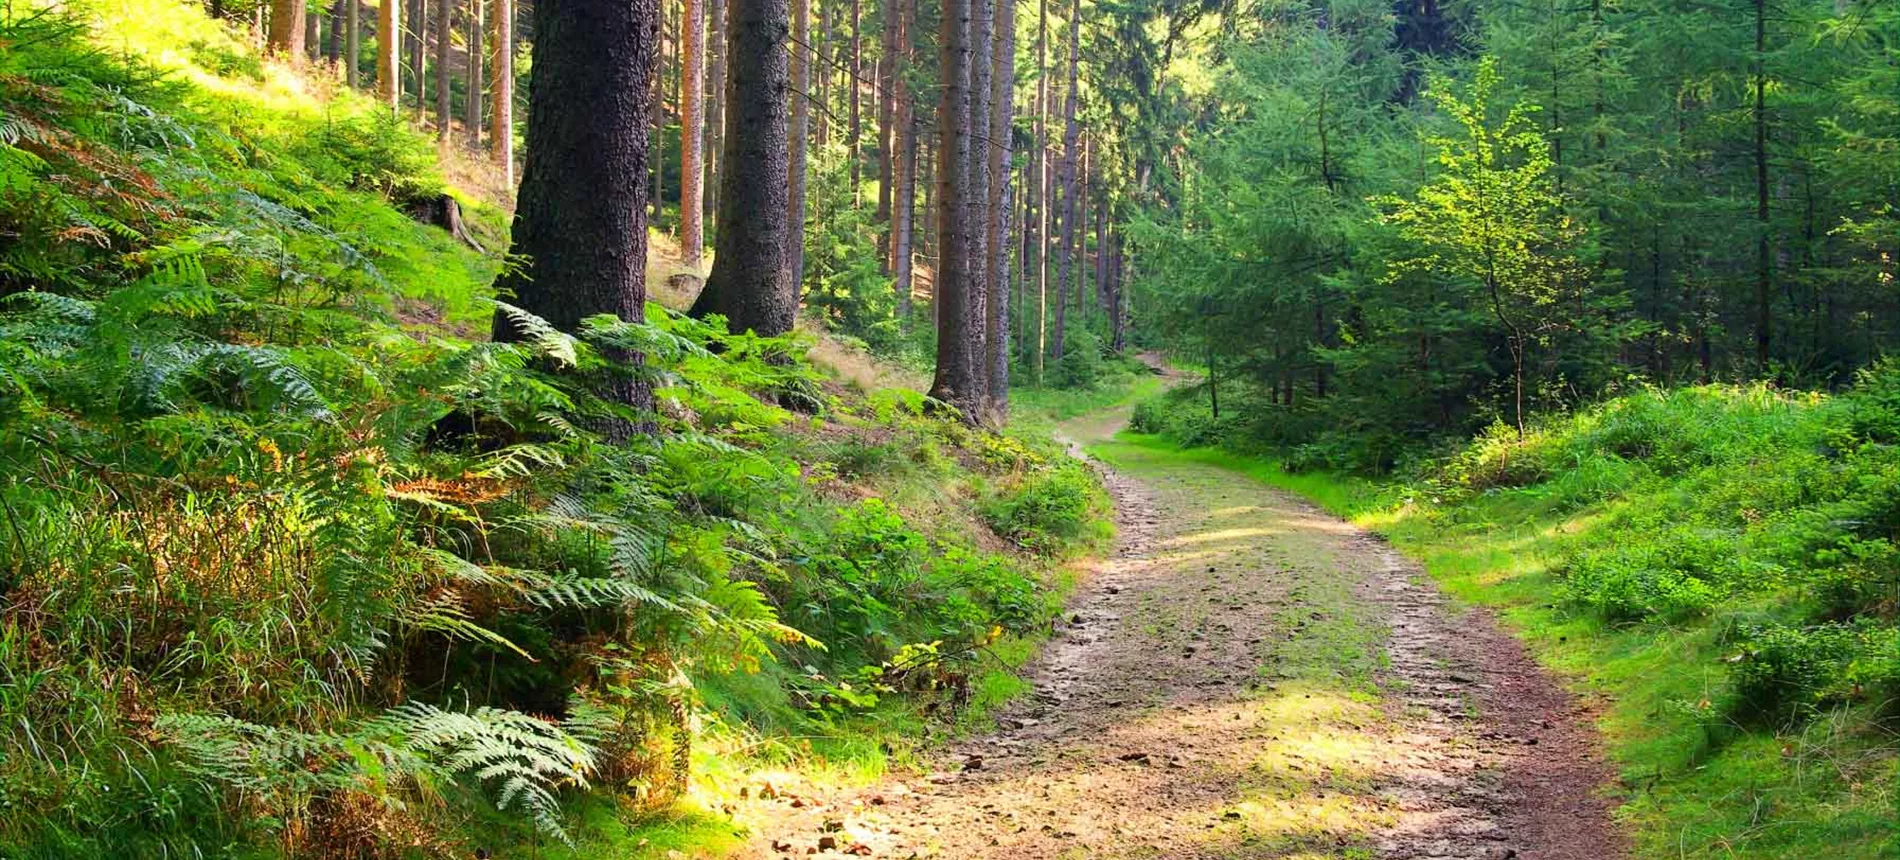 Tie johtaa läpi vehreän metsän.